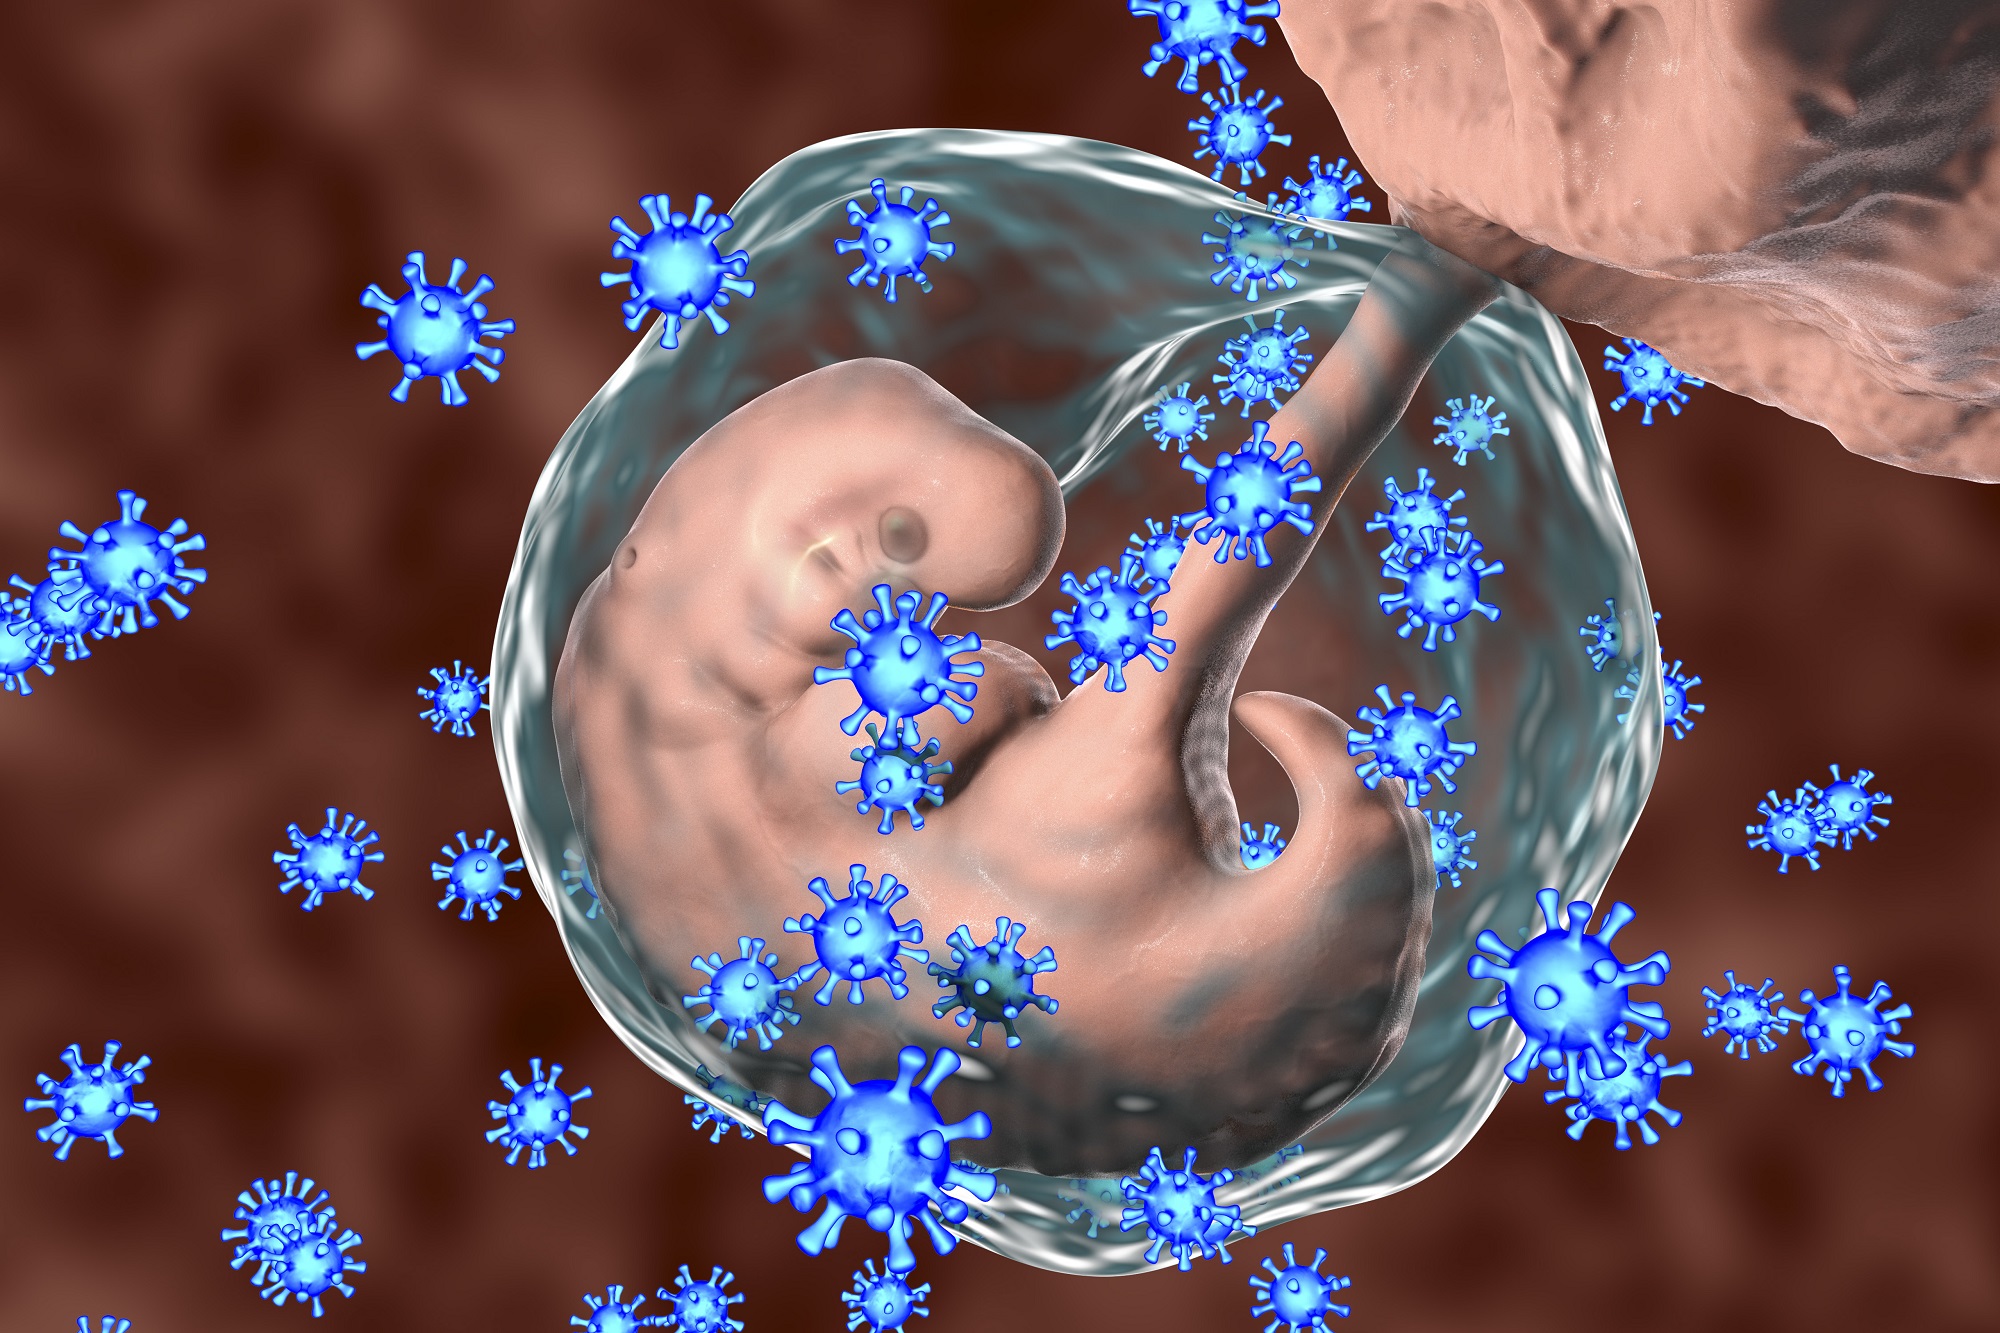 Lợi ích và rủi ro khi tiêm vaccine viêm gan B cho phụ nữ có thai - Ảnh 1.